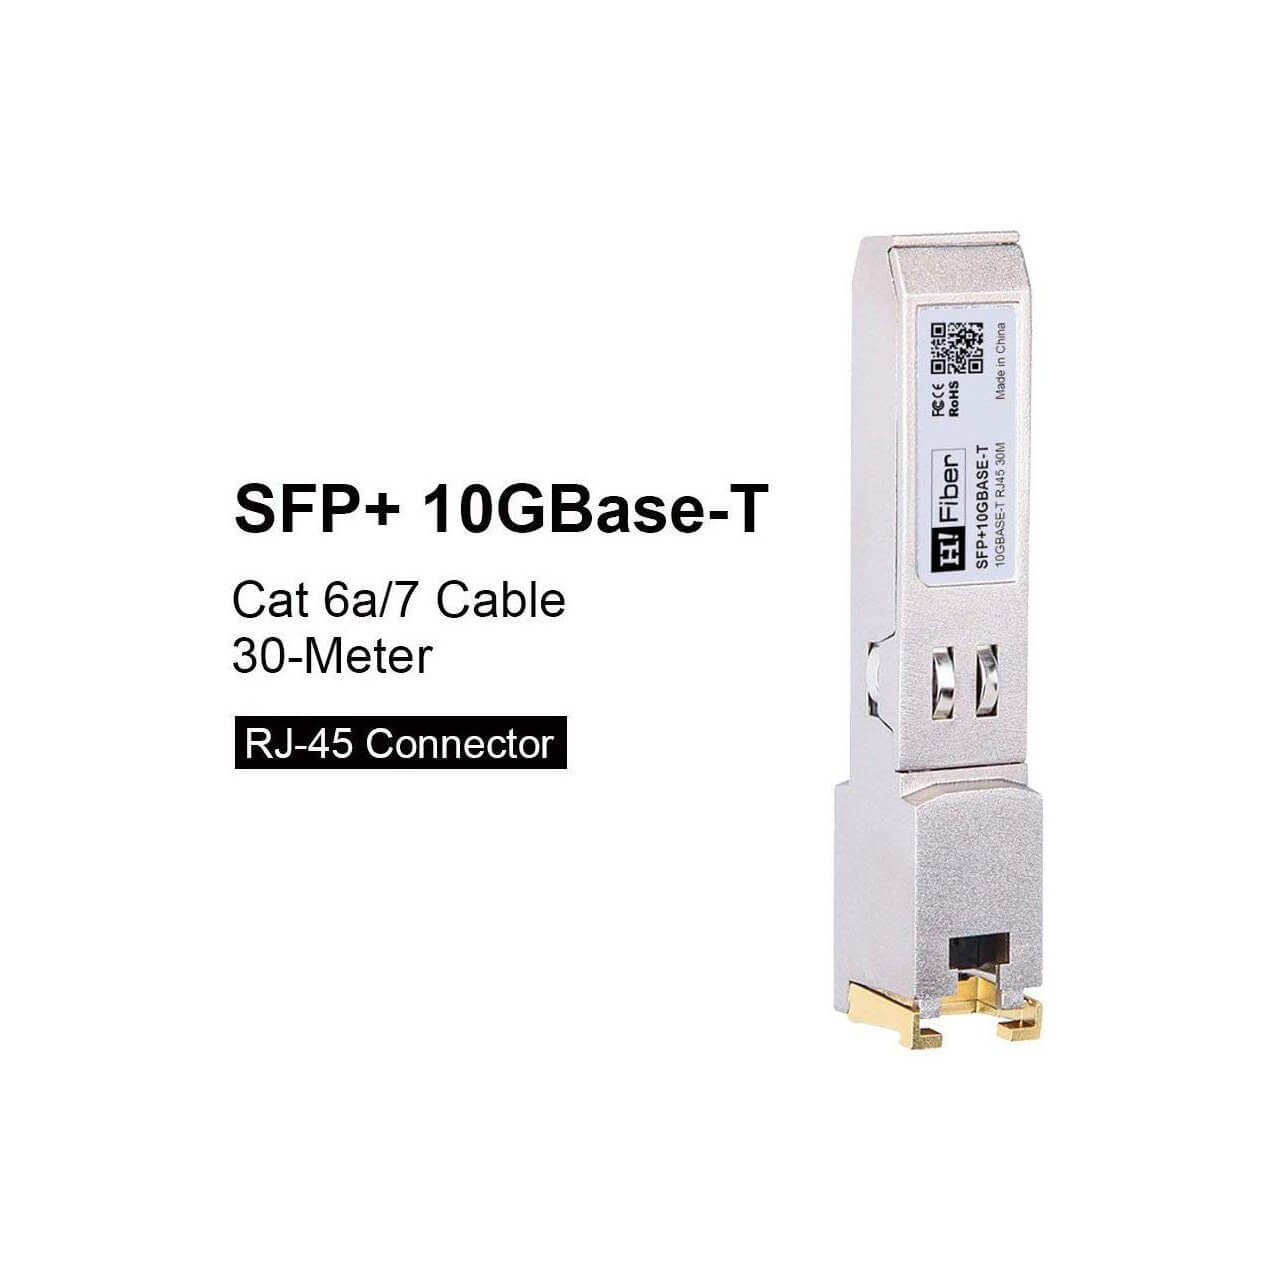 SFP+ Copper Transceiver 10GBase-T, Cat 6a/7, 30M 2